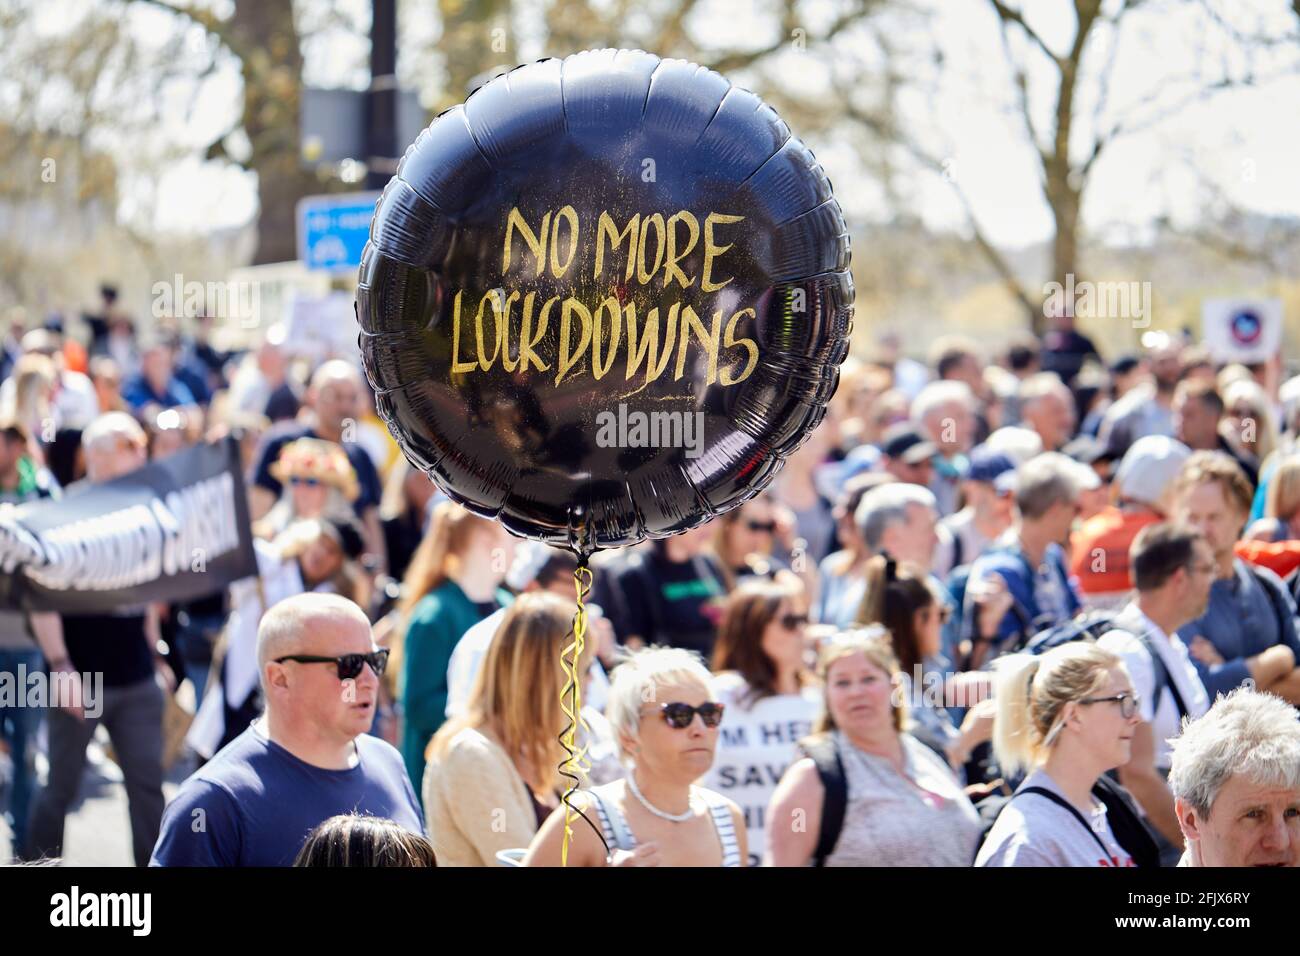 Londres, Reino Unido - 24 Abr 2021: Miles de personas marcharon en el centro de Londres pidiendo el levantamiento de todas las restricciones al coronavirus. Foto de stock